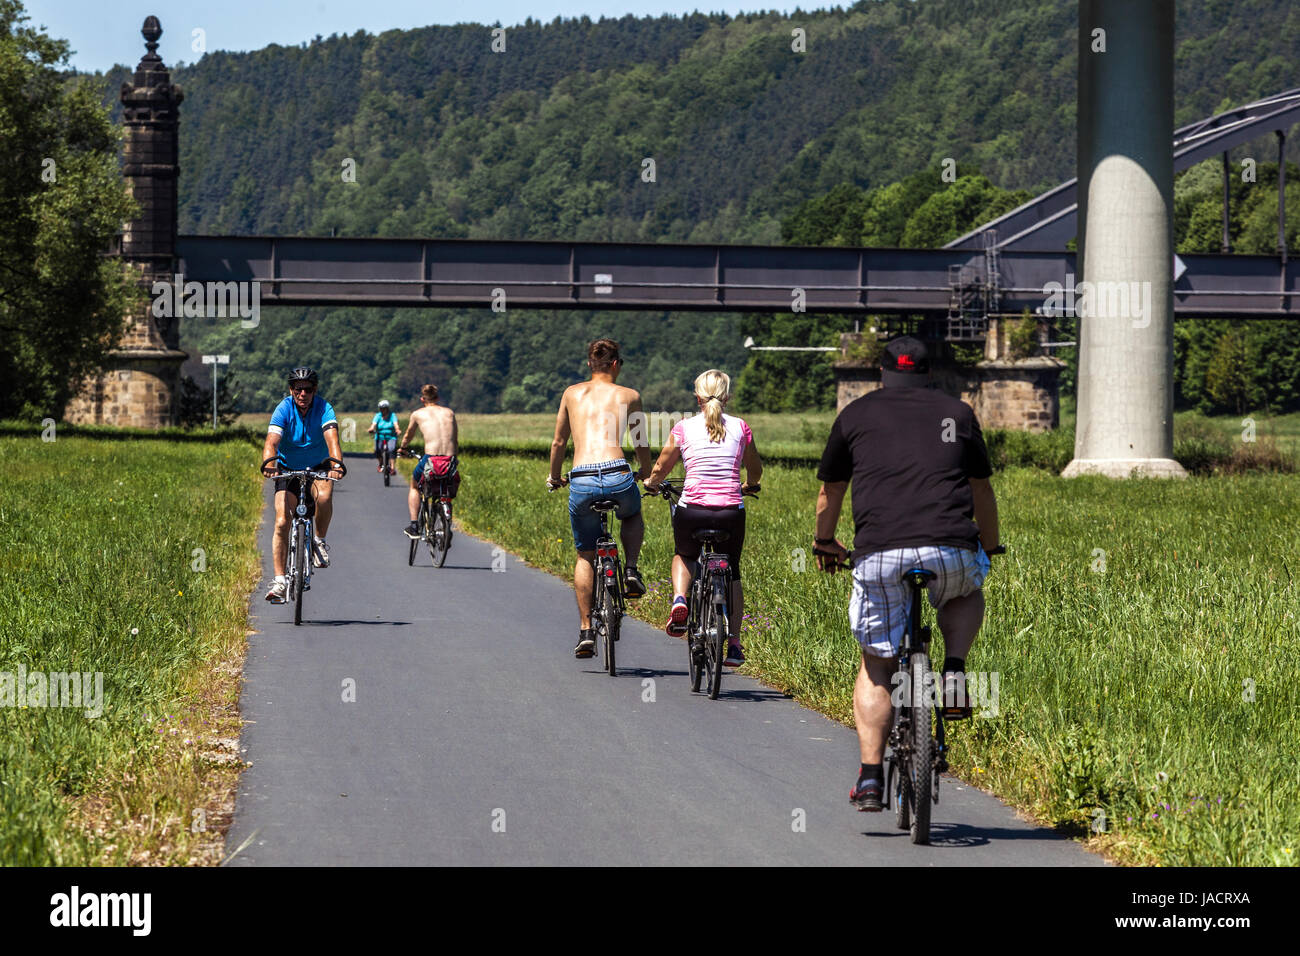 La gente, los ciclistas en una moto trail río Elba bicicleta en puente Bad Schandau valle del río Elba, en el Estado federado de Sajonia, Alemania, Europa puente Foto de stock